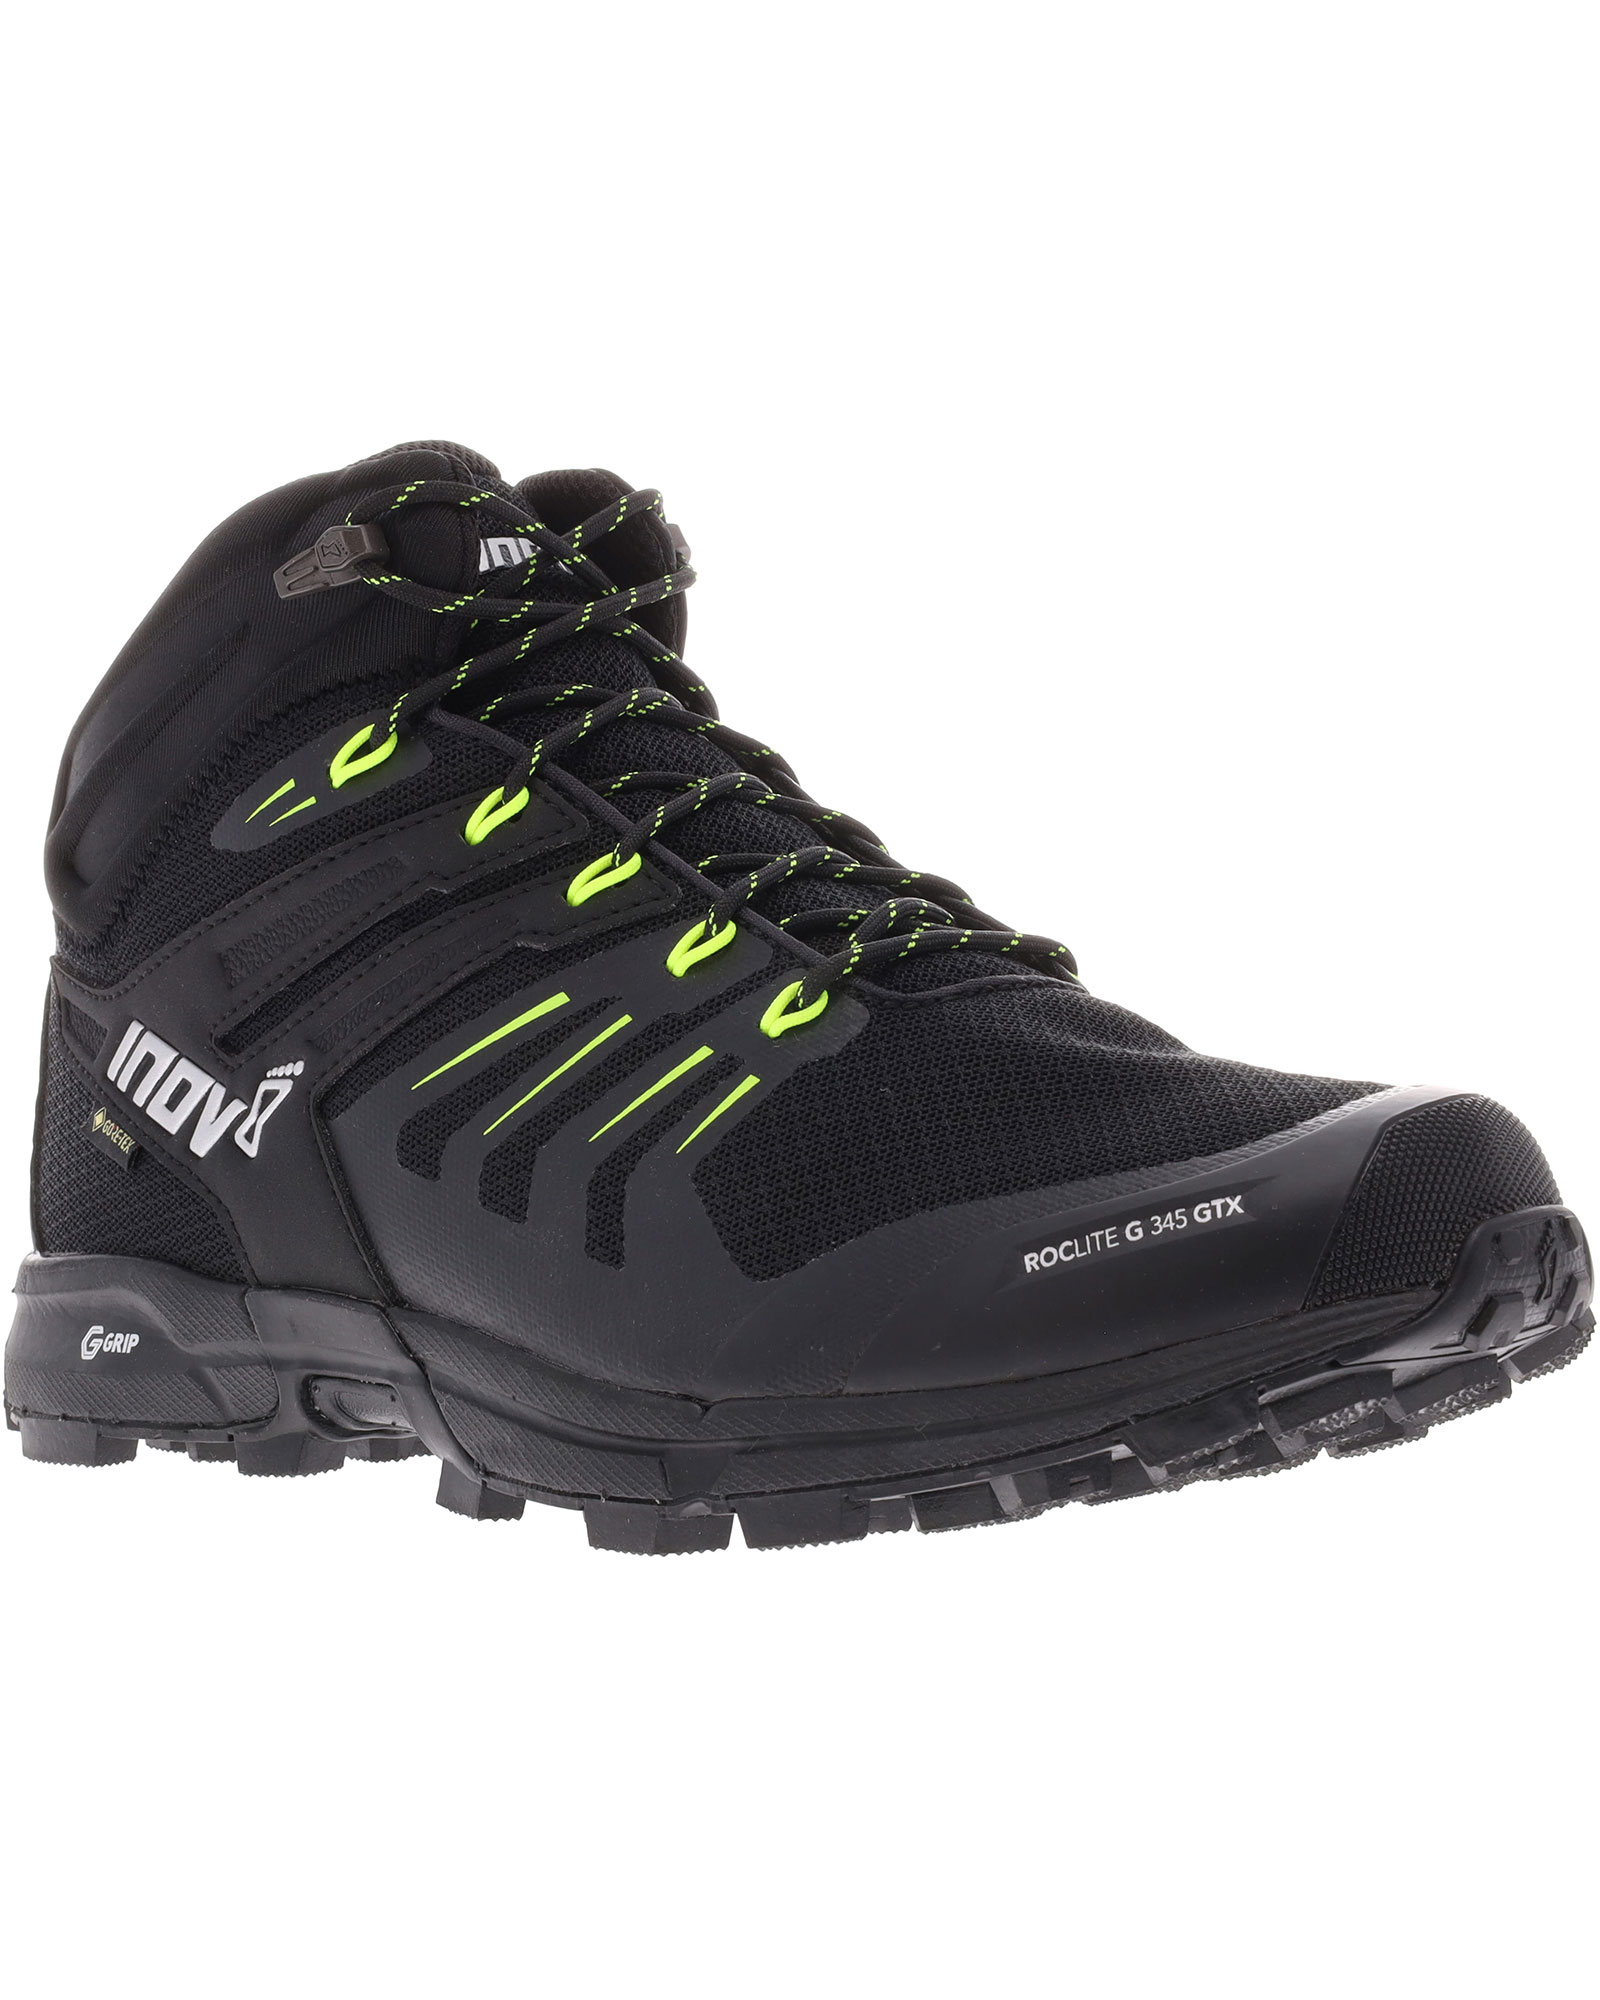 Inov 8 Roclite G 345 V2 GORE TEX Men’s Boots - Black/Lime UK 7.5